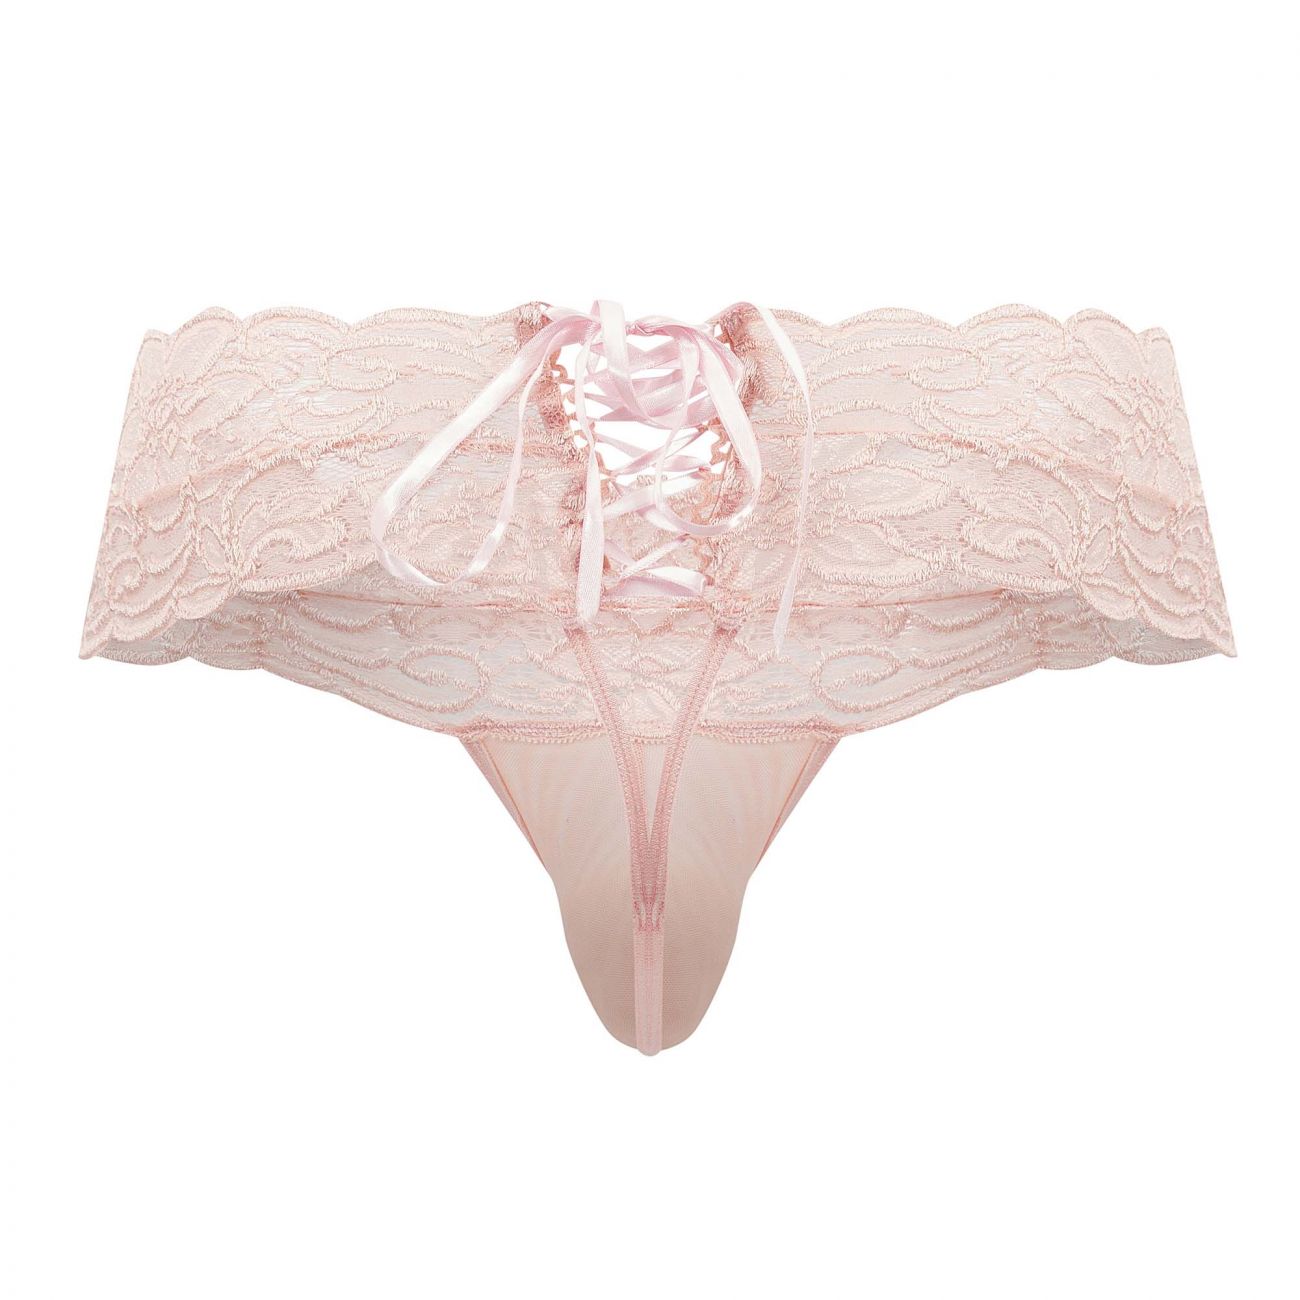 JCSTK - CandyMan 99595X Floral Lace Thongs Rose Plus Sizes